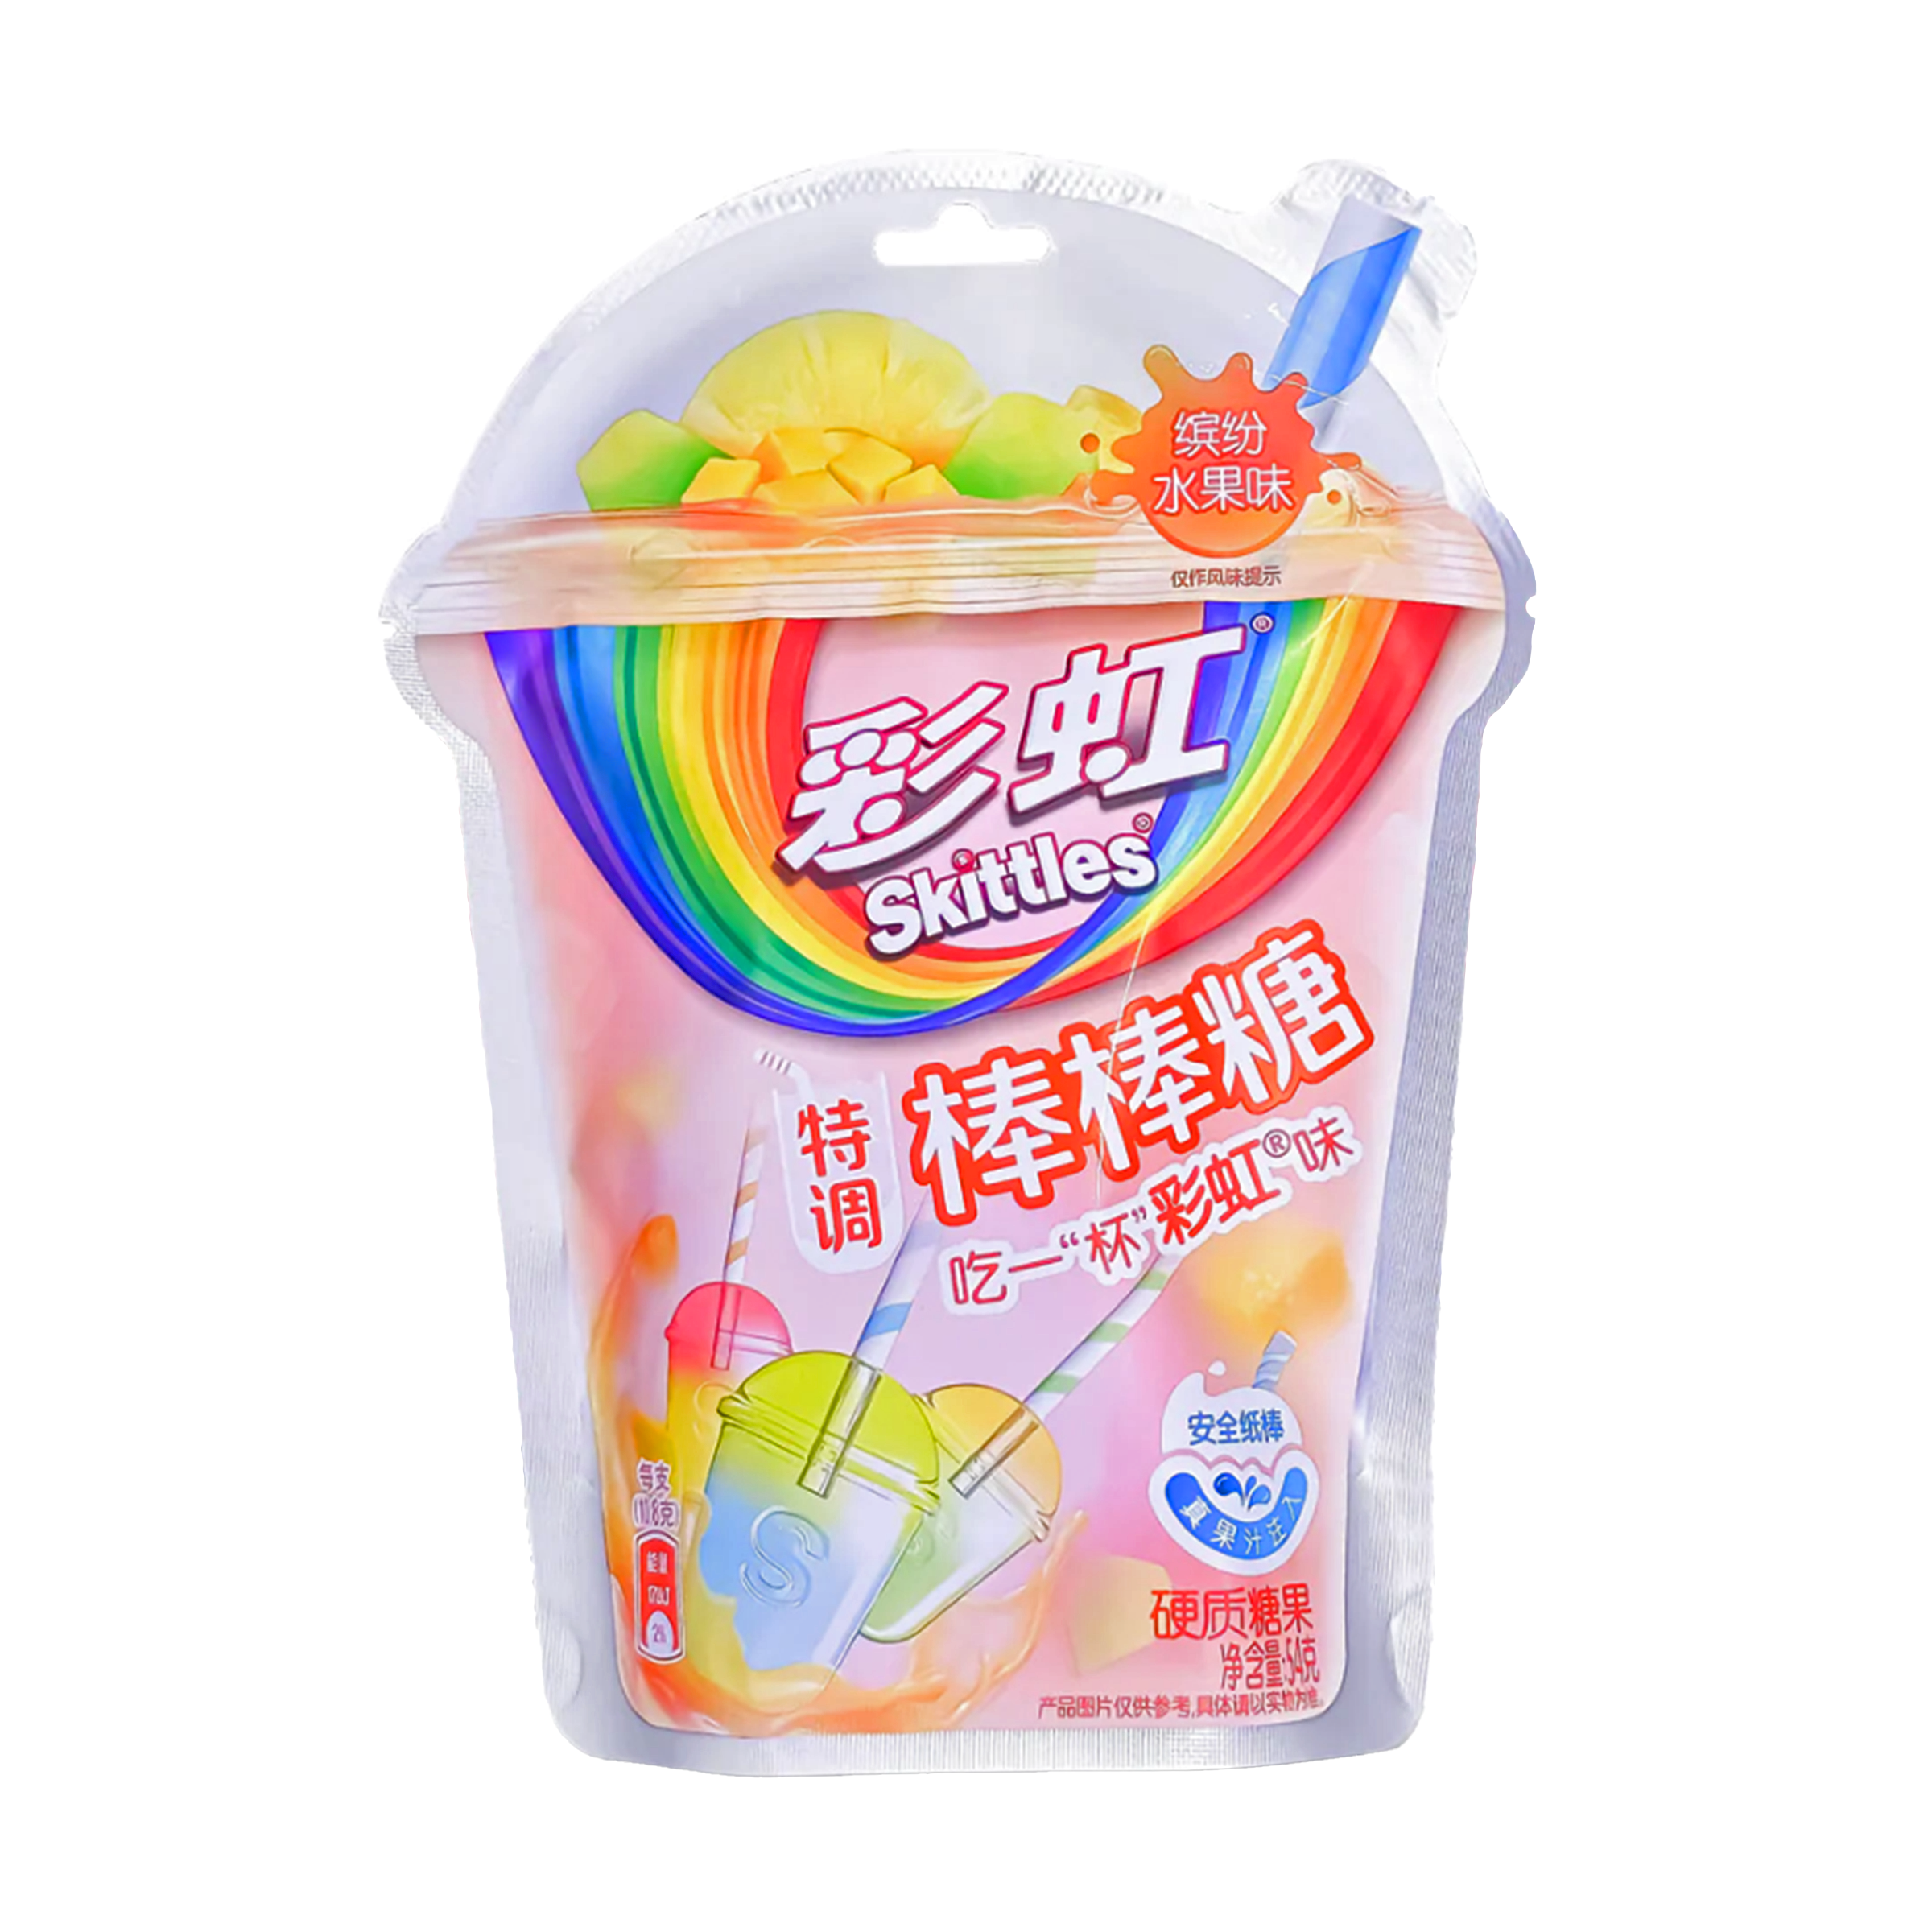 Skittles Lollipops - Asia